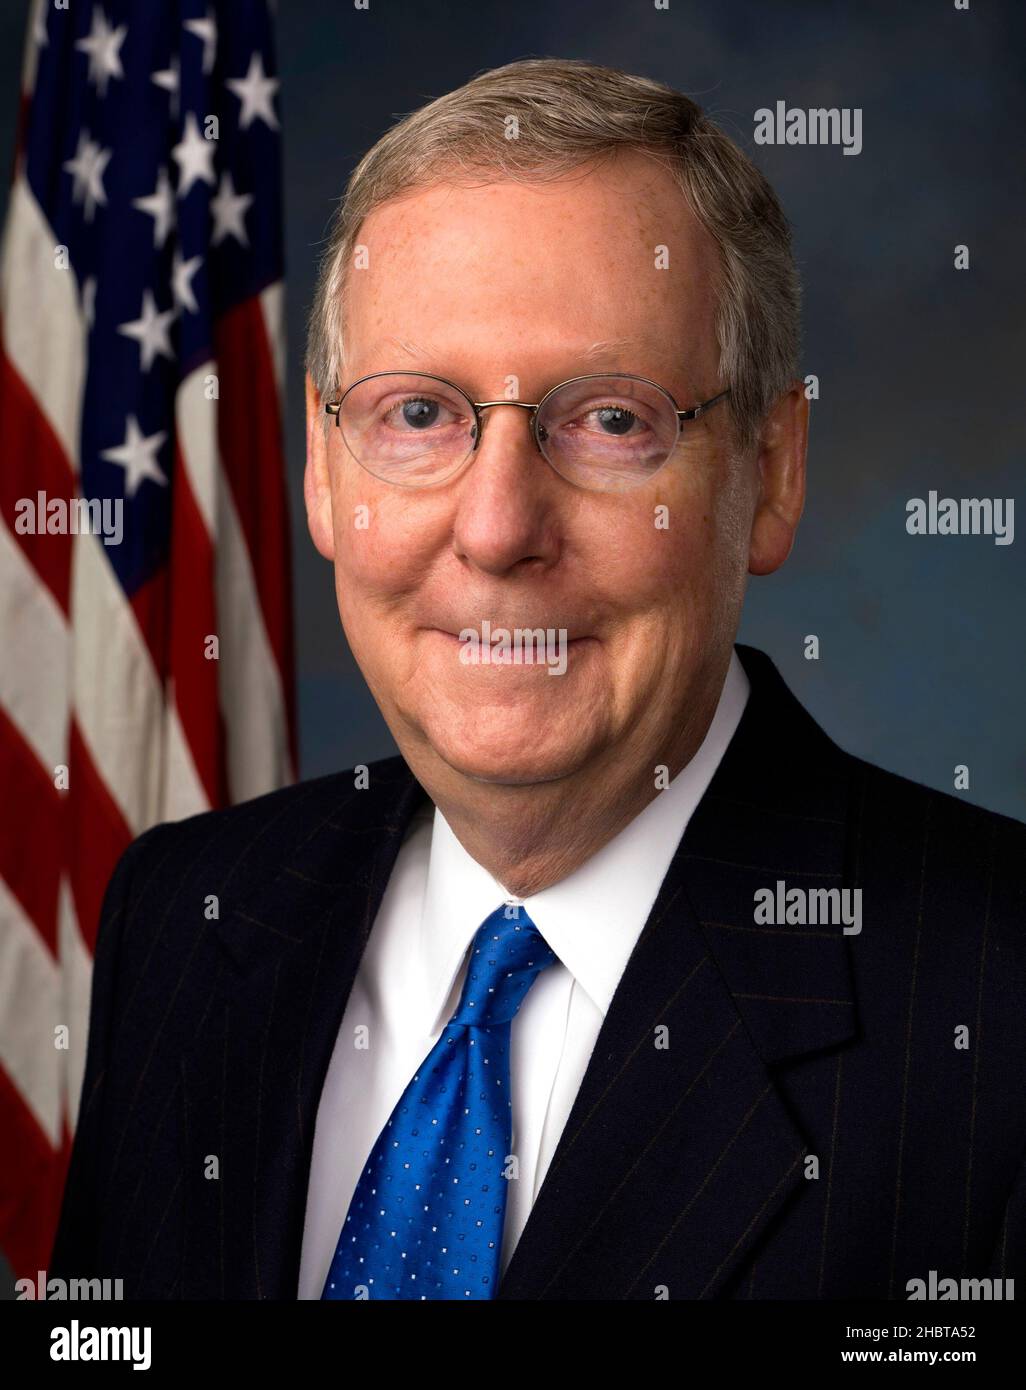 Offizielles Porträt des Senators der Vereinigten Staaten Mitch McConnell (R-KY) ca. 2011 Stockfoto